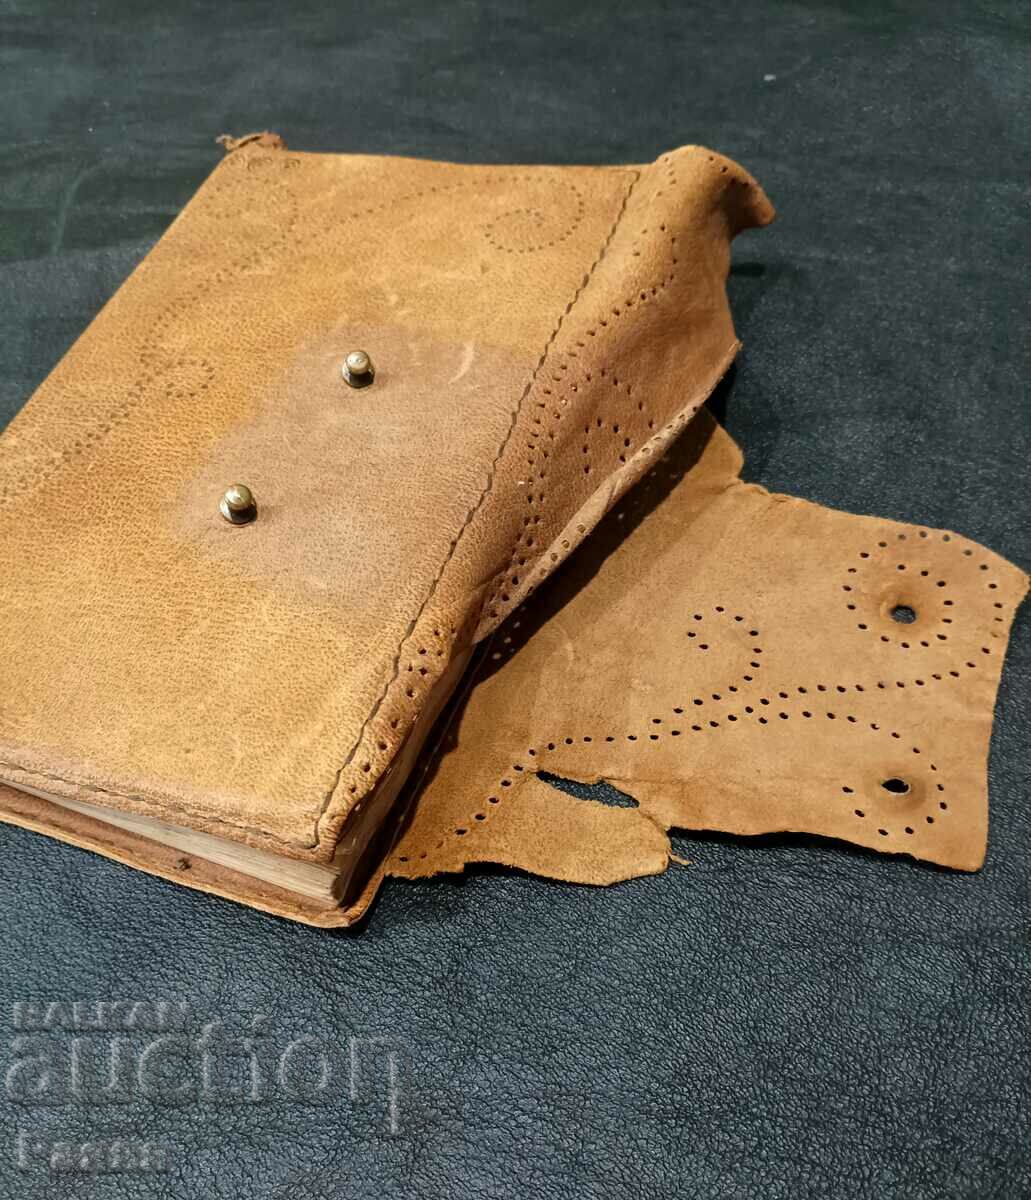 Leather book binding